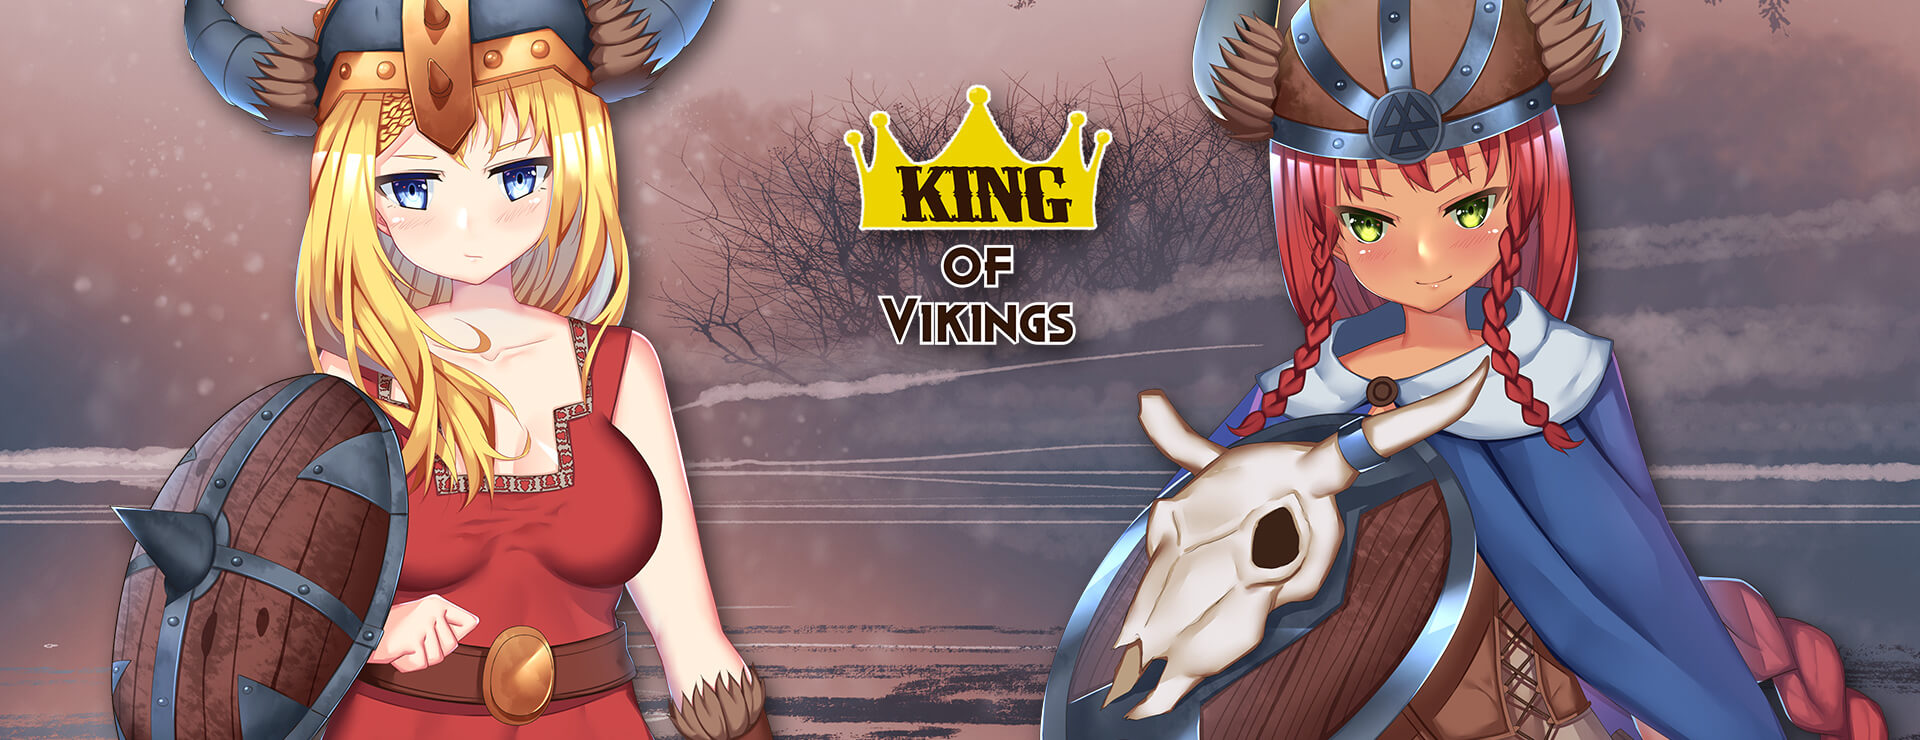 King of Vikings - Powieść wizualna Gra